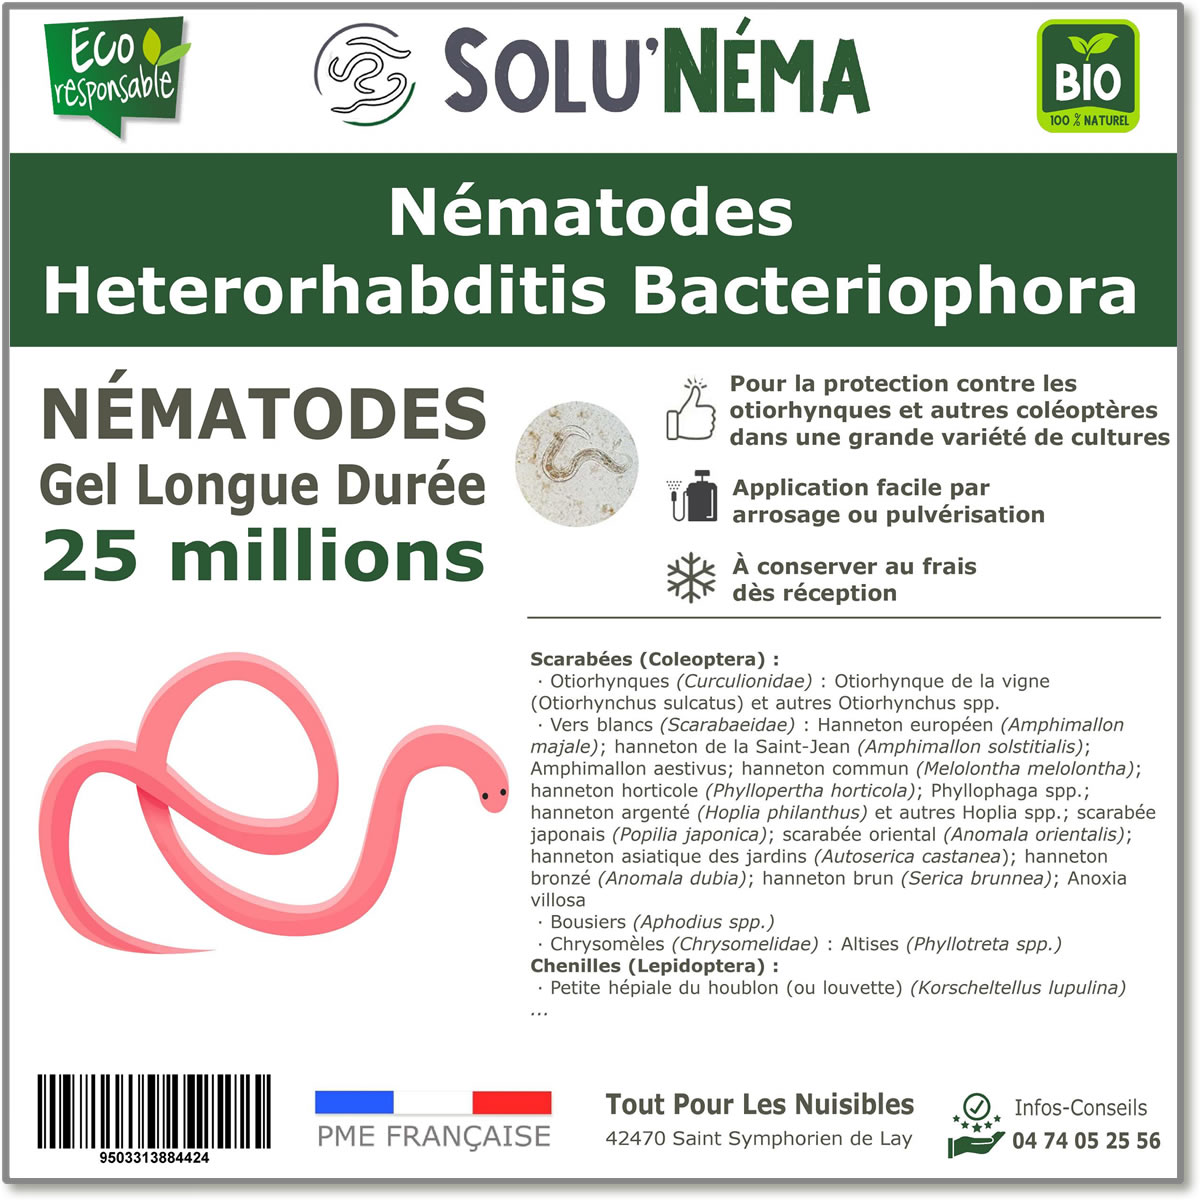 25 millones de nematodos Heterorhabditis Bacteriophora (HB)